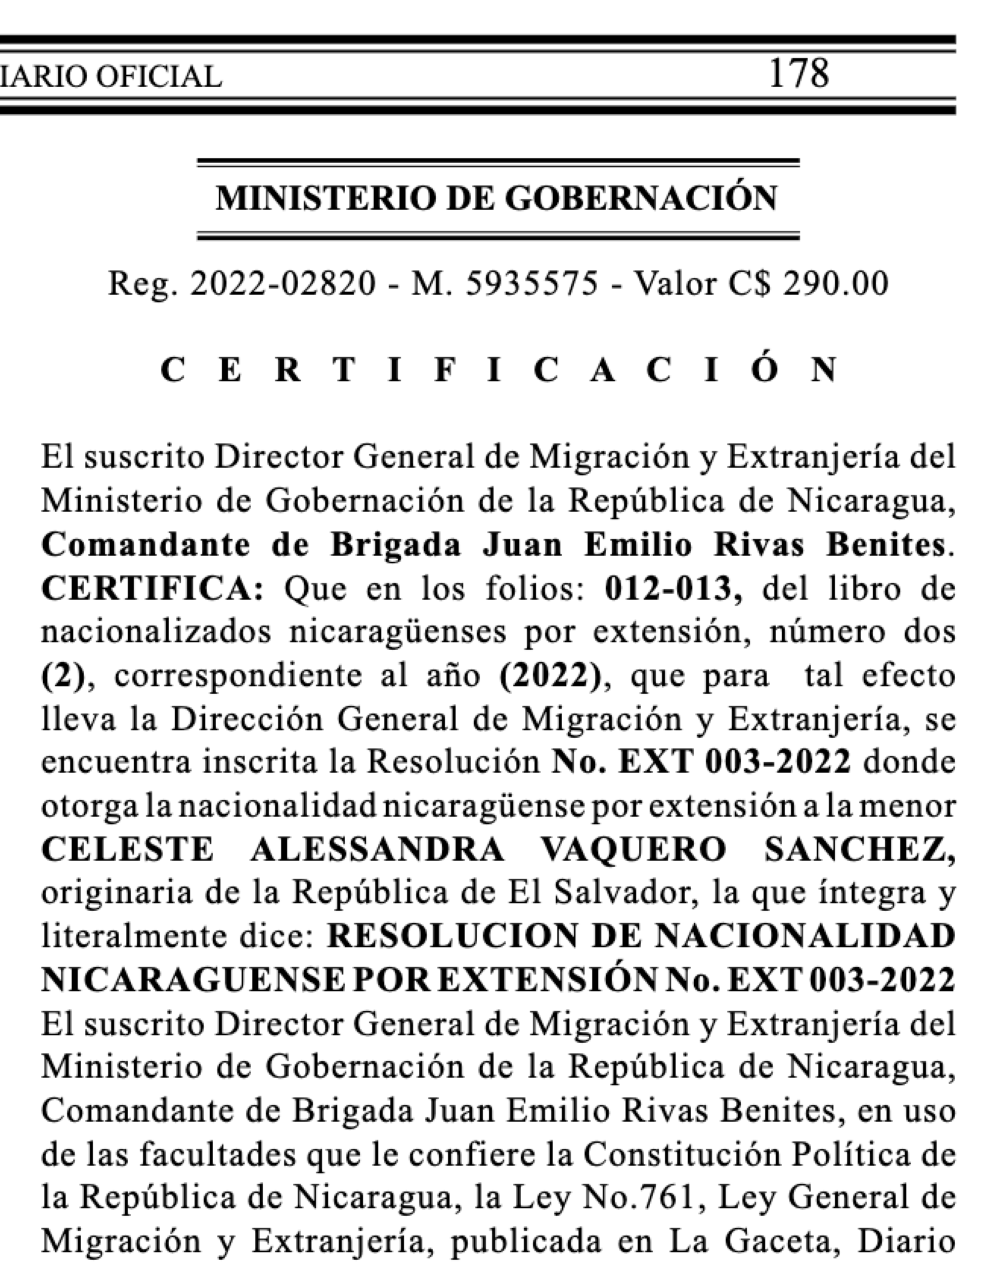 El beneficio fue otorgado a través del director de Migración y Extranjería de Nicaragua y publicado en el Diario La Gaceta.